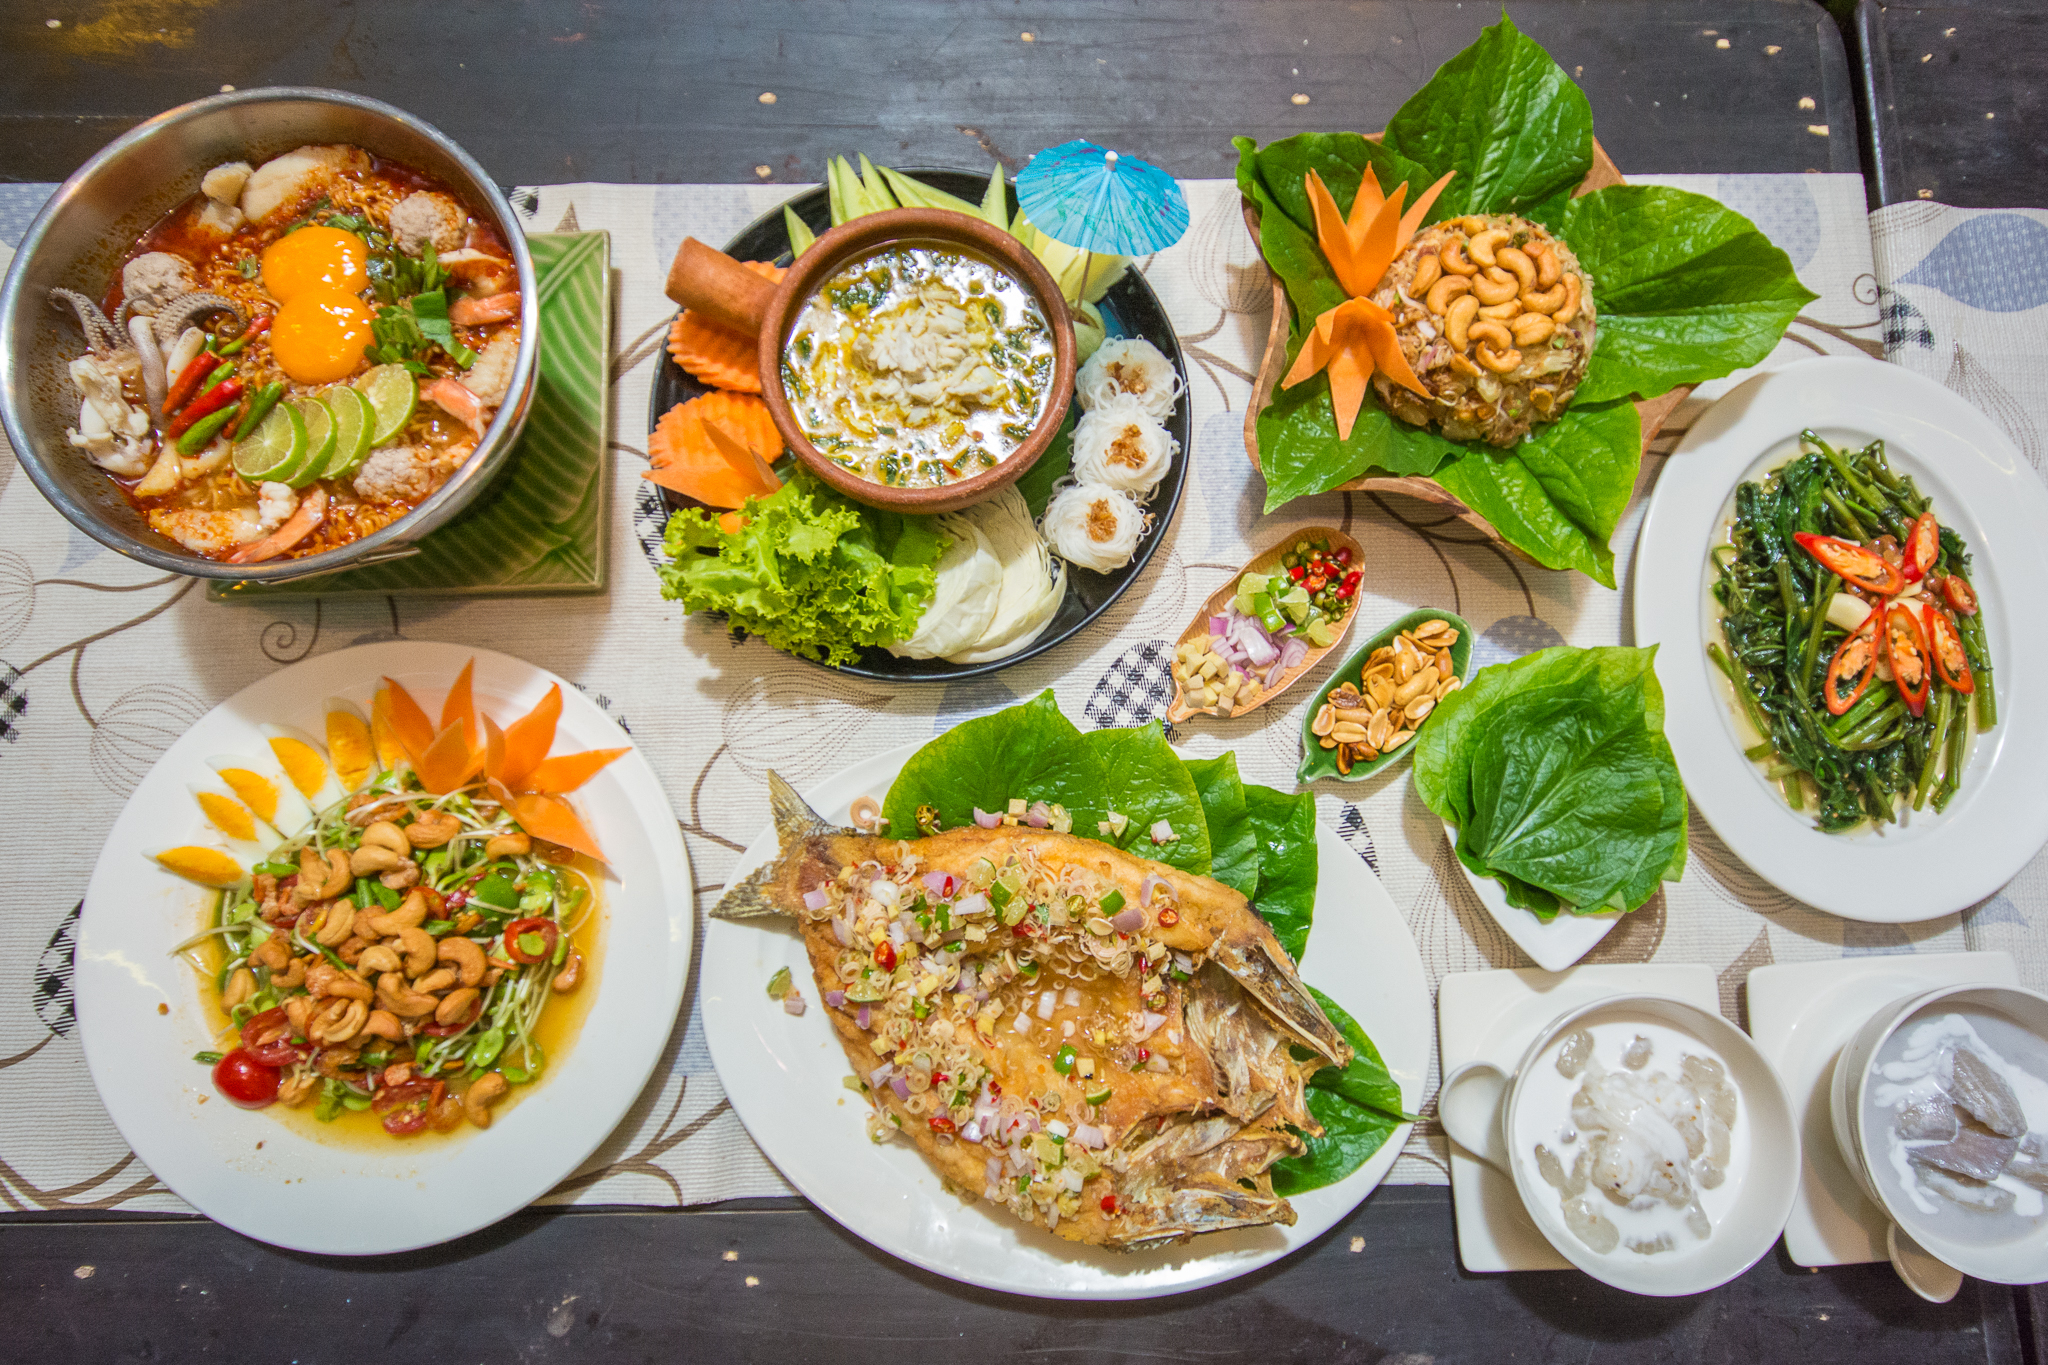 อาหารไทยแบบฉบับไทยต้นตำรับ รสชาติเข้มข้น เสิร์ฟกันจานใหญ่ ที่ร้านครัวพรรวา เชียงใหม่